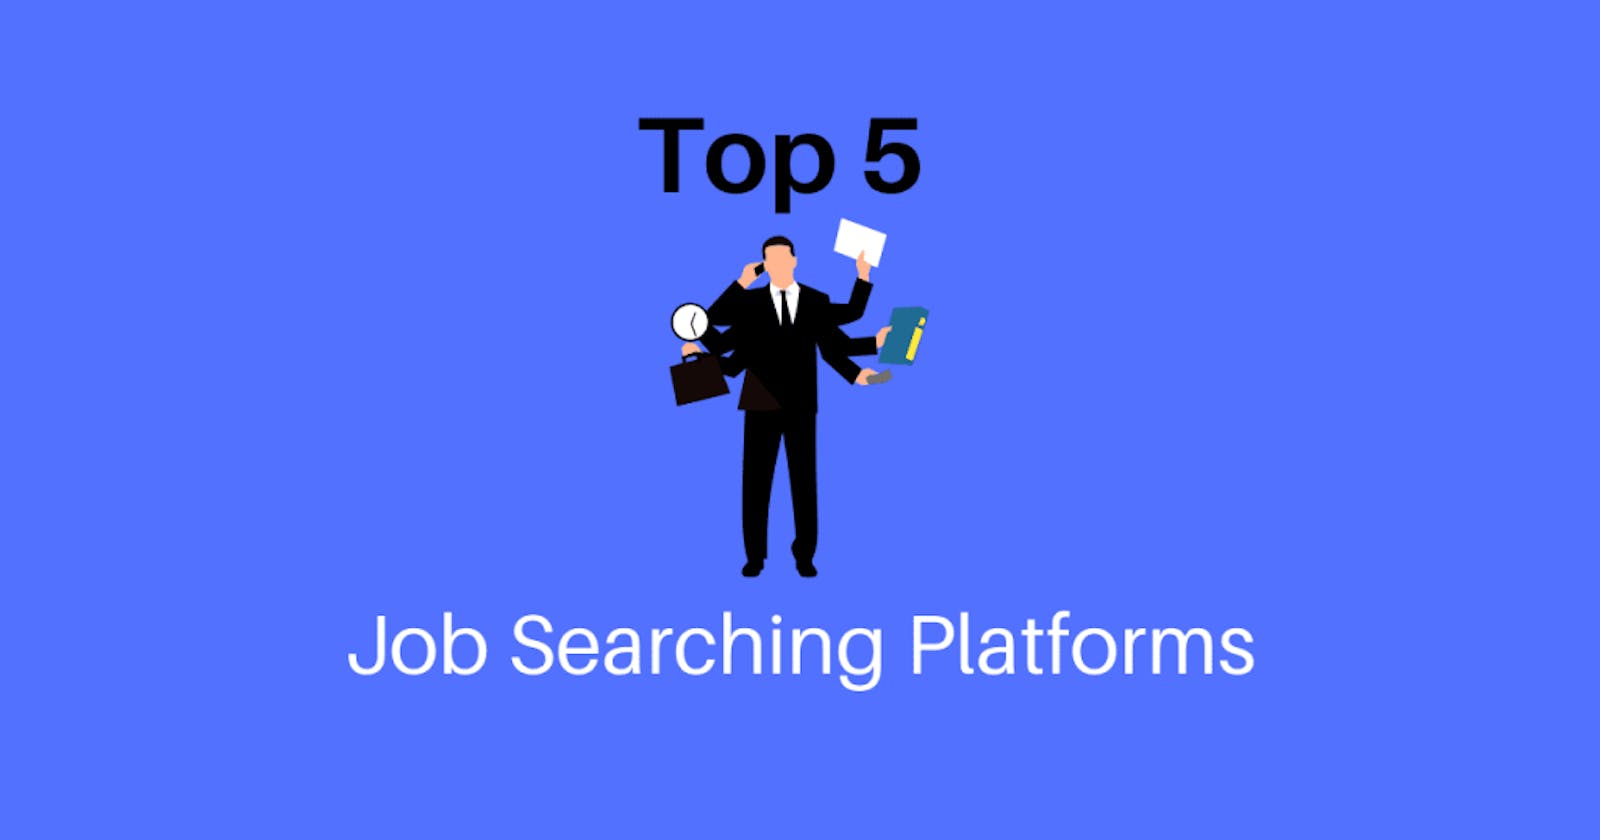 Top 5 Job Searching Platforms